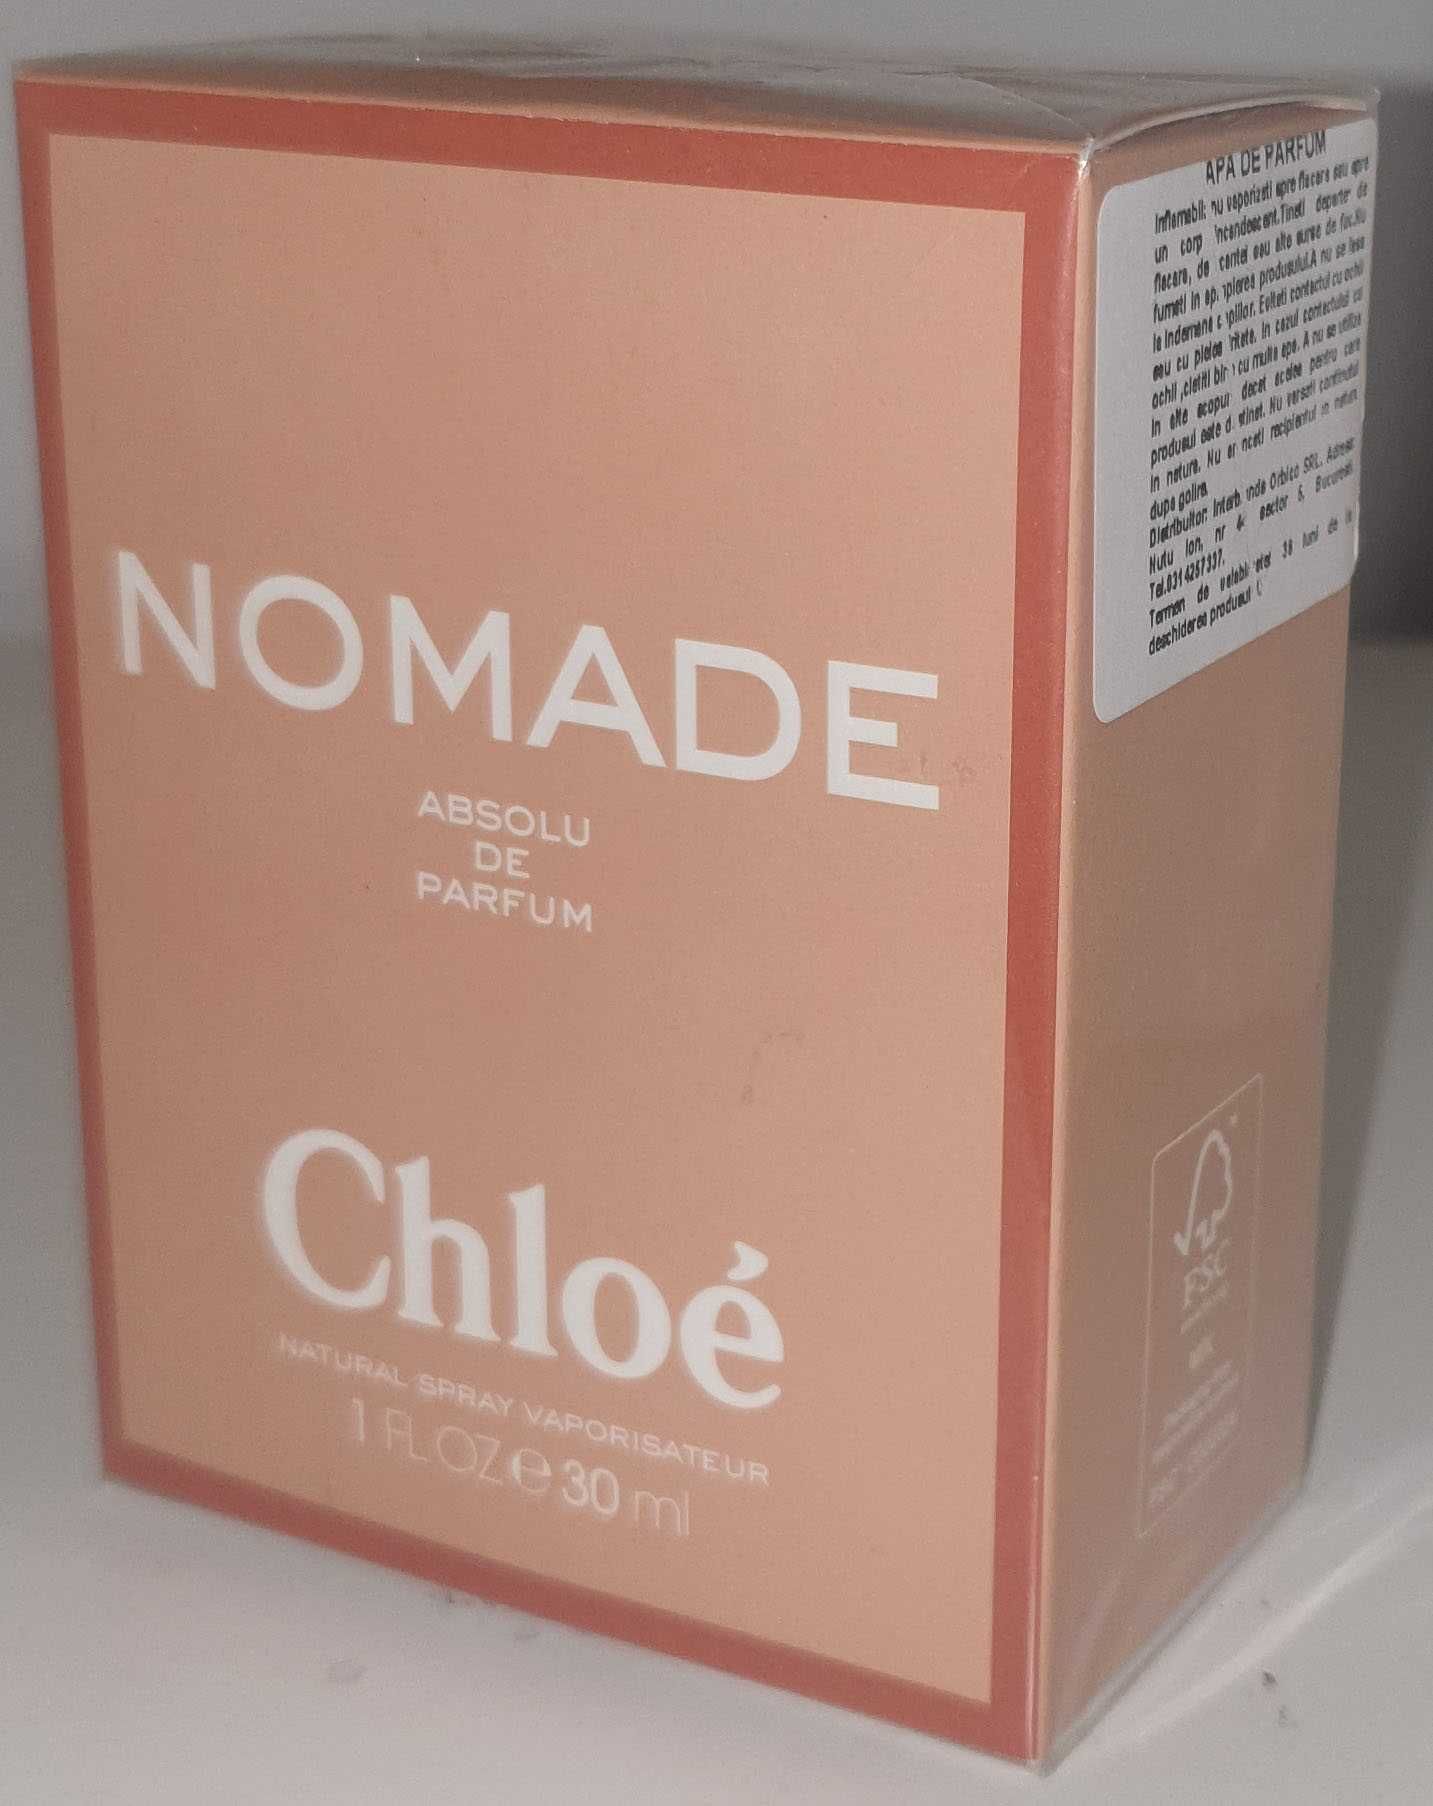 Chloe Nomade Absolu de Parfum, 30 ml, original, ieftin, cadou